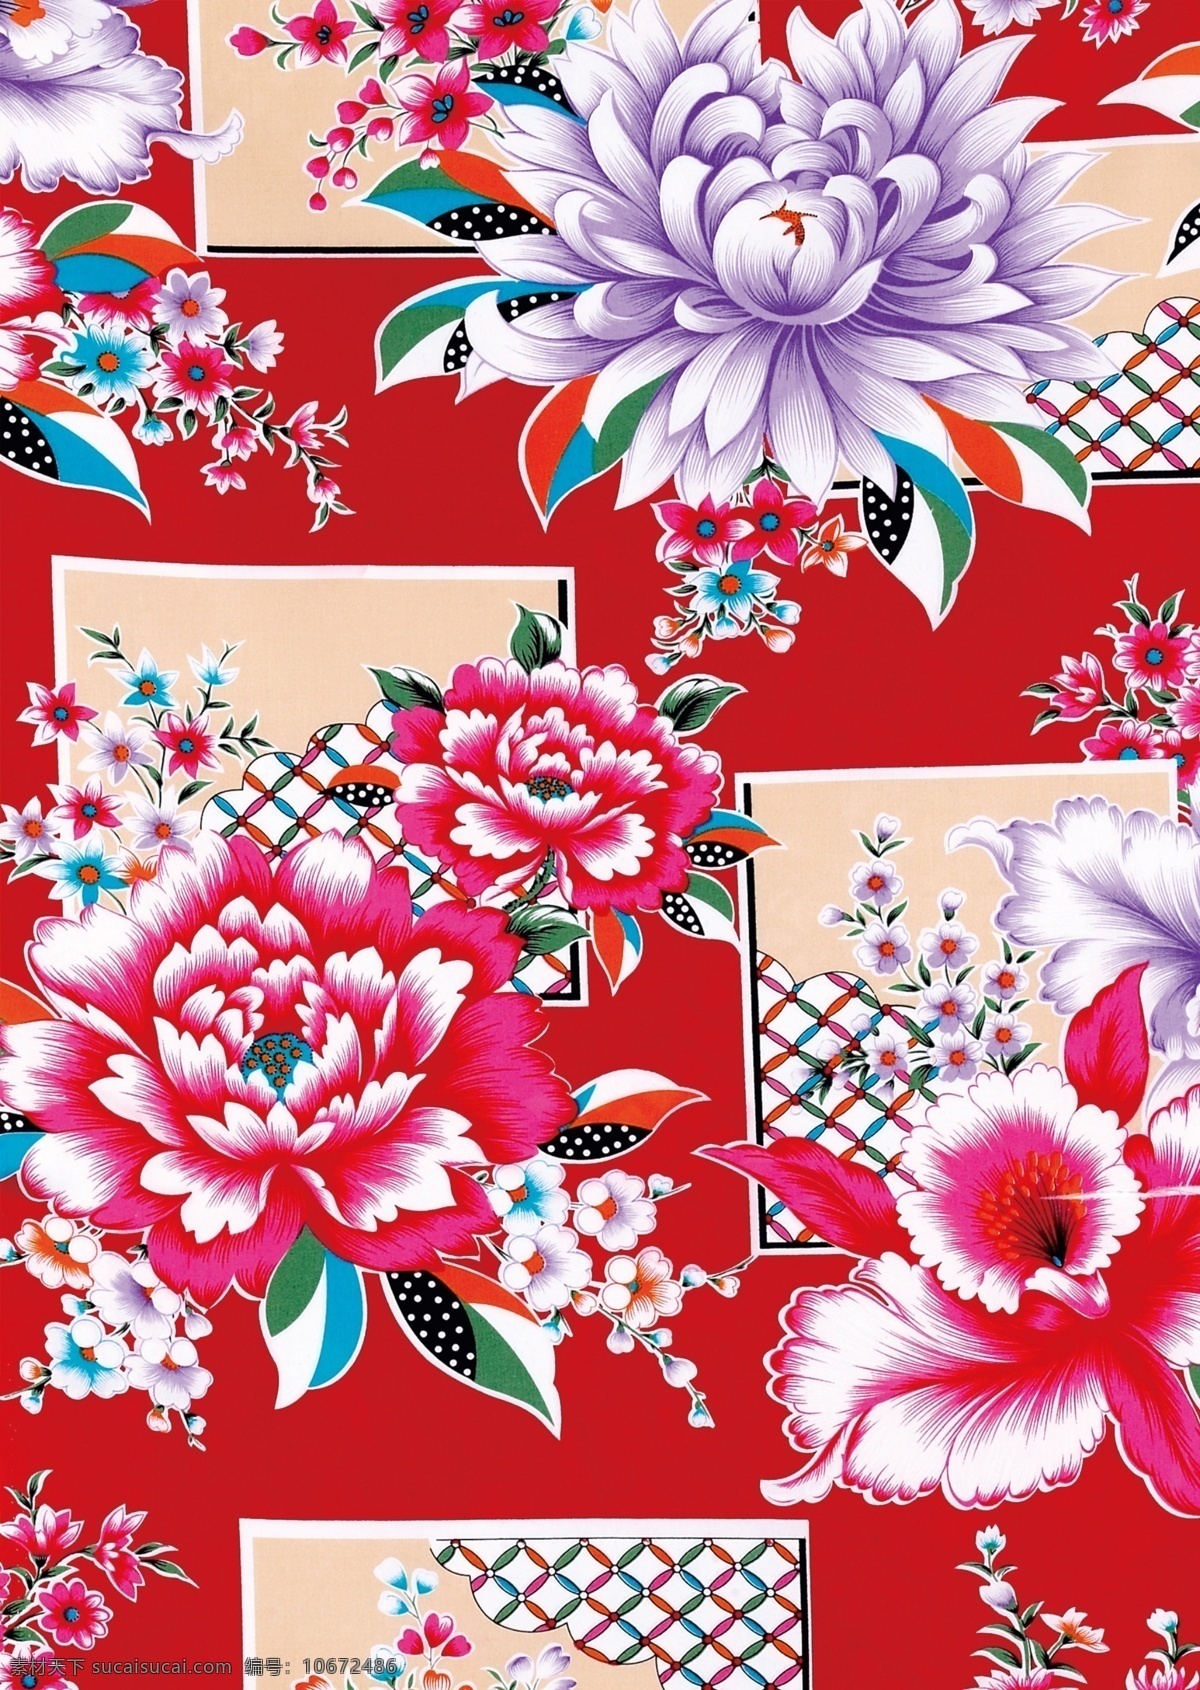 复古 花纹 布纹 背景图片 设计素材 花布 布花 背景模板 红色